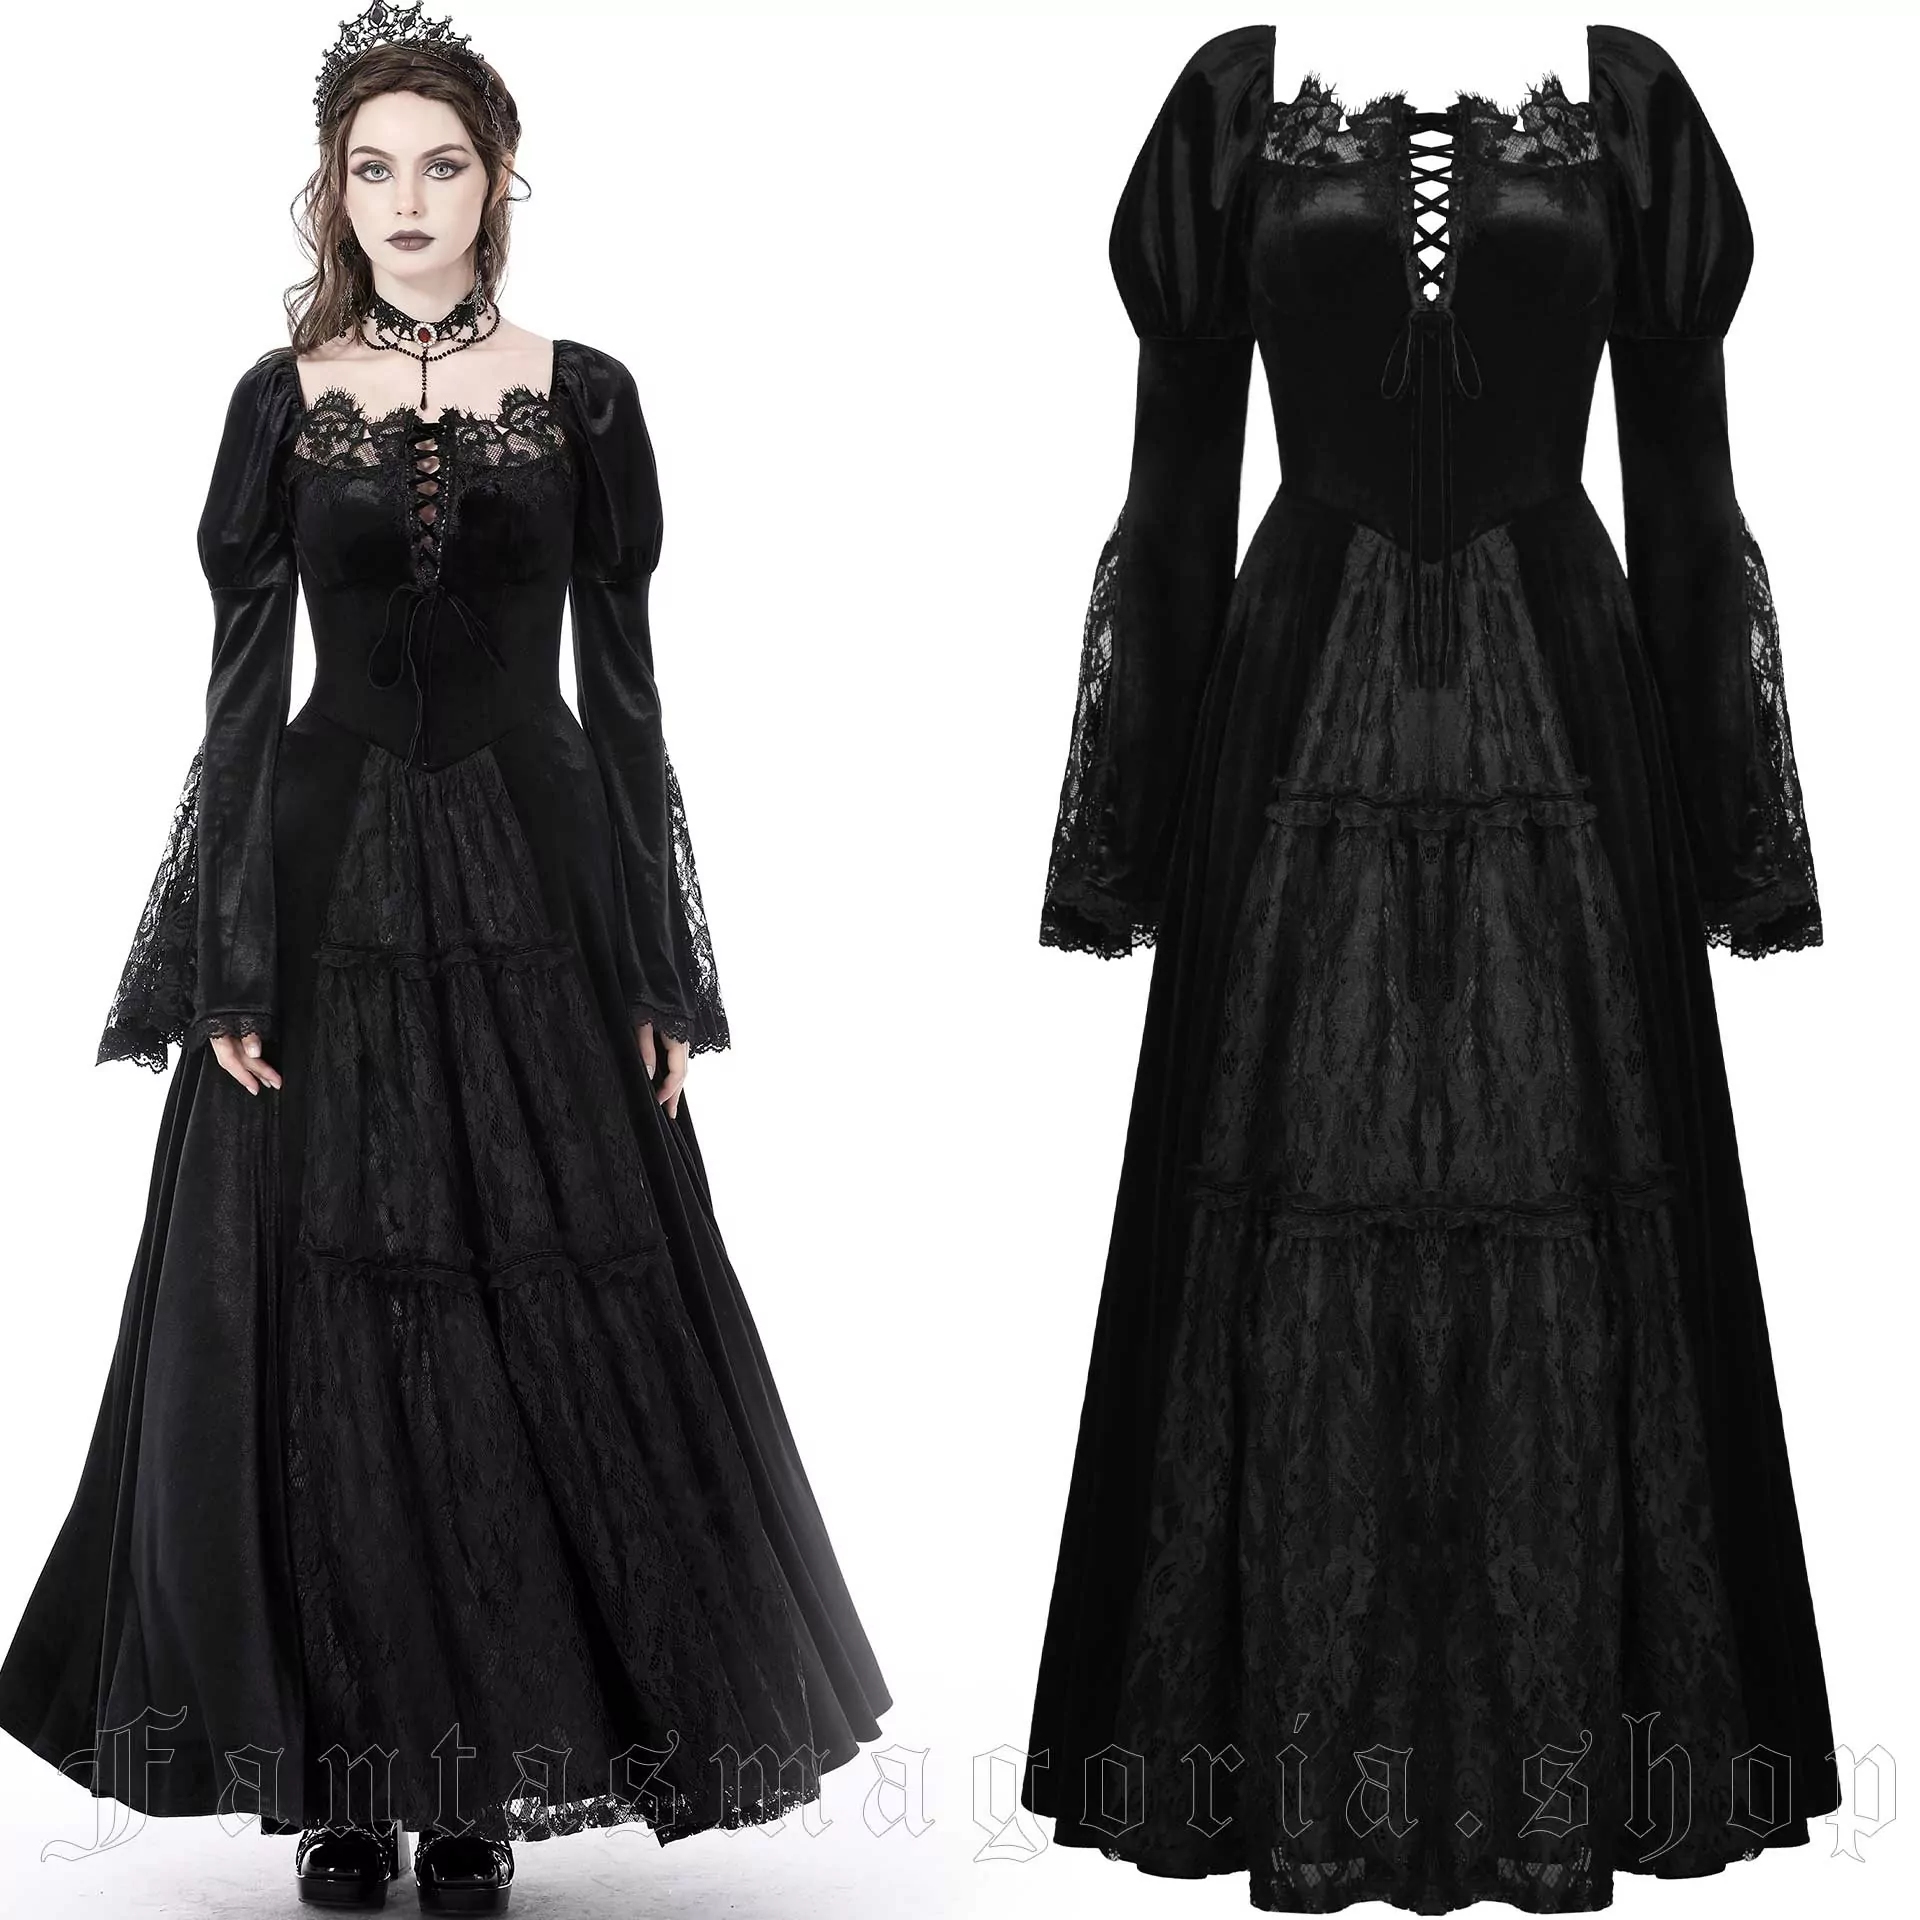 Gothic Nymph Dress - Dark in Love - DW751 1